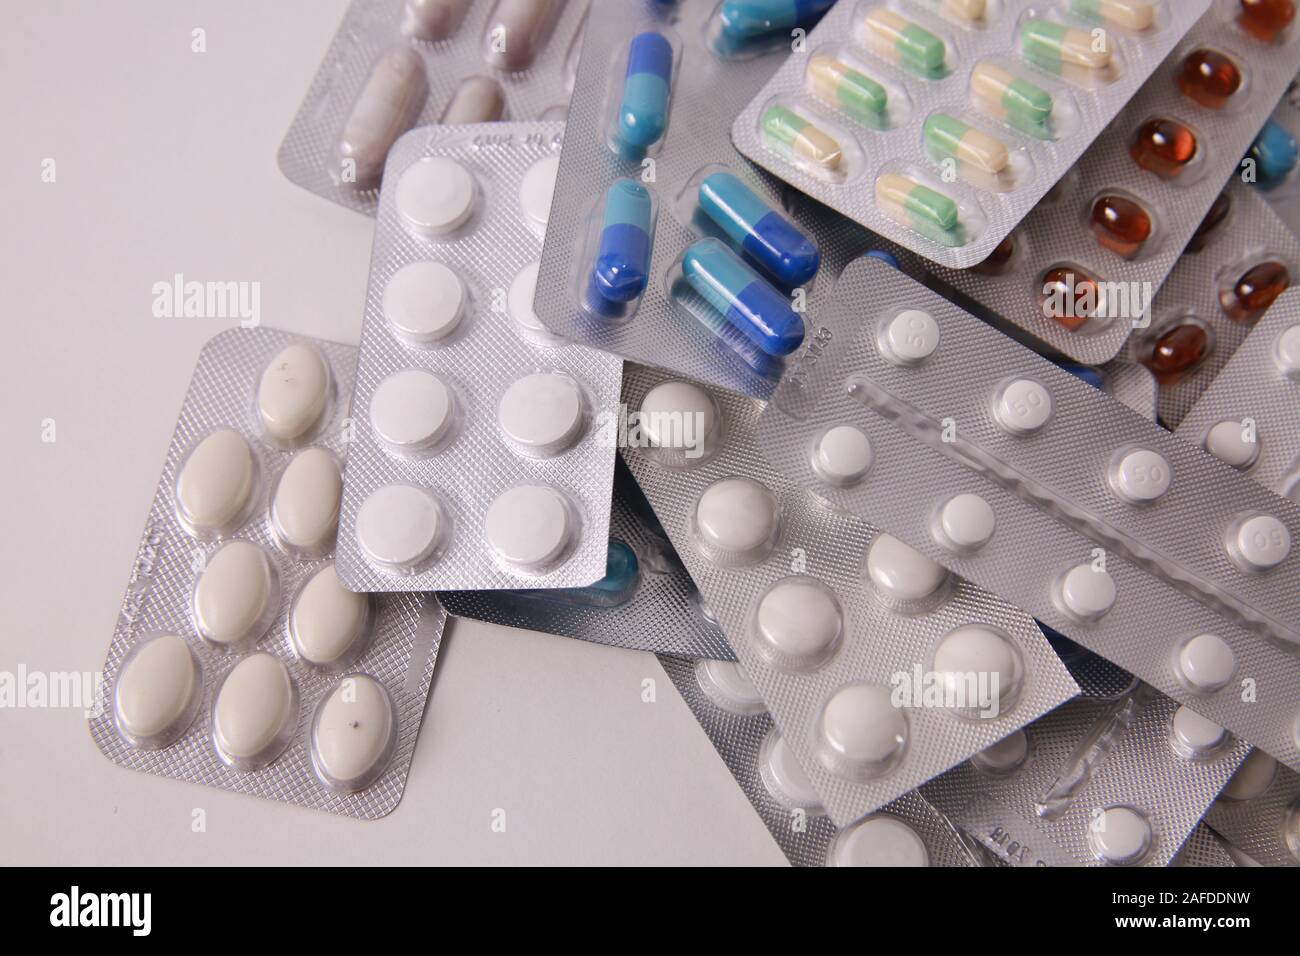 Pharmazeutische Industrie Konzept. Antibiotischen Drogewiderstand, Verordnung für medikamentöse Behandlung. Apotheke Thema, Kapsel Pillen. Stockfoto